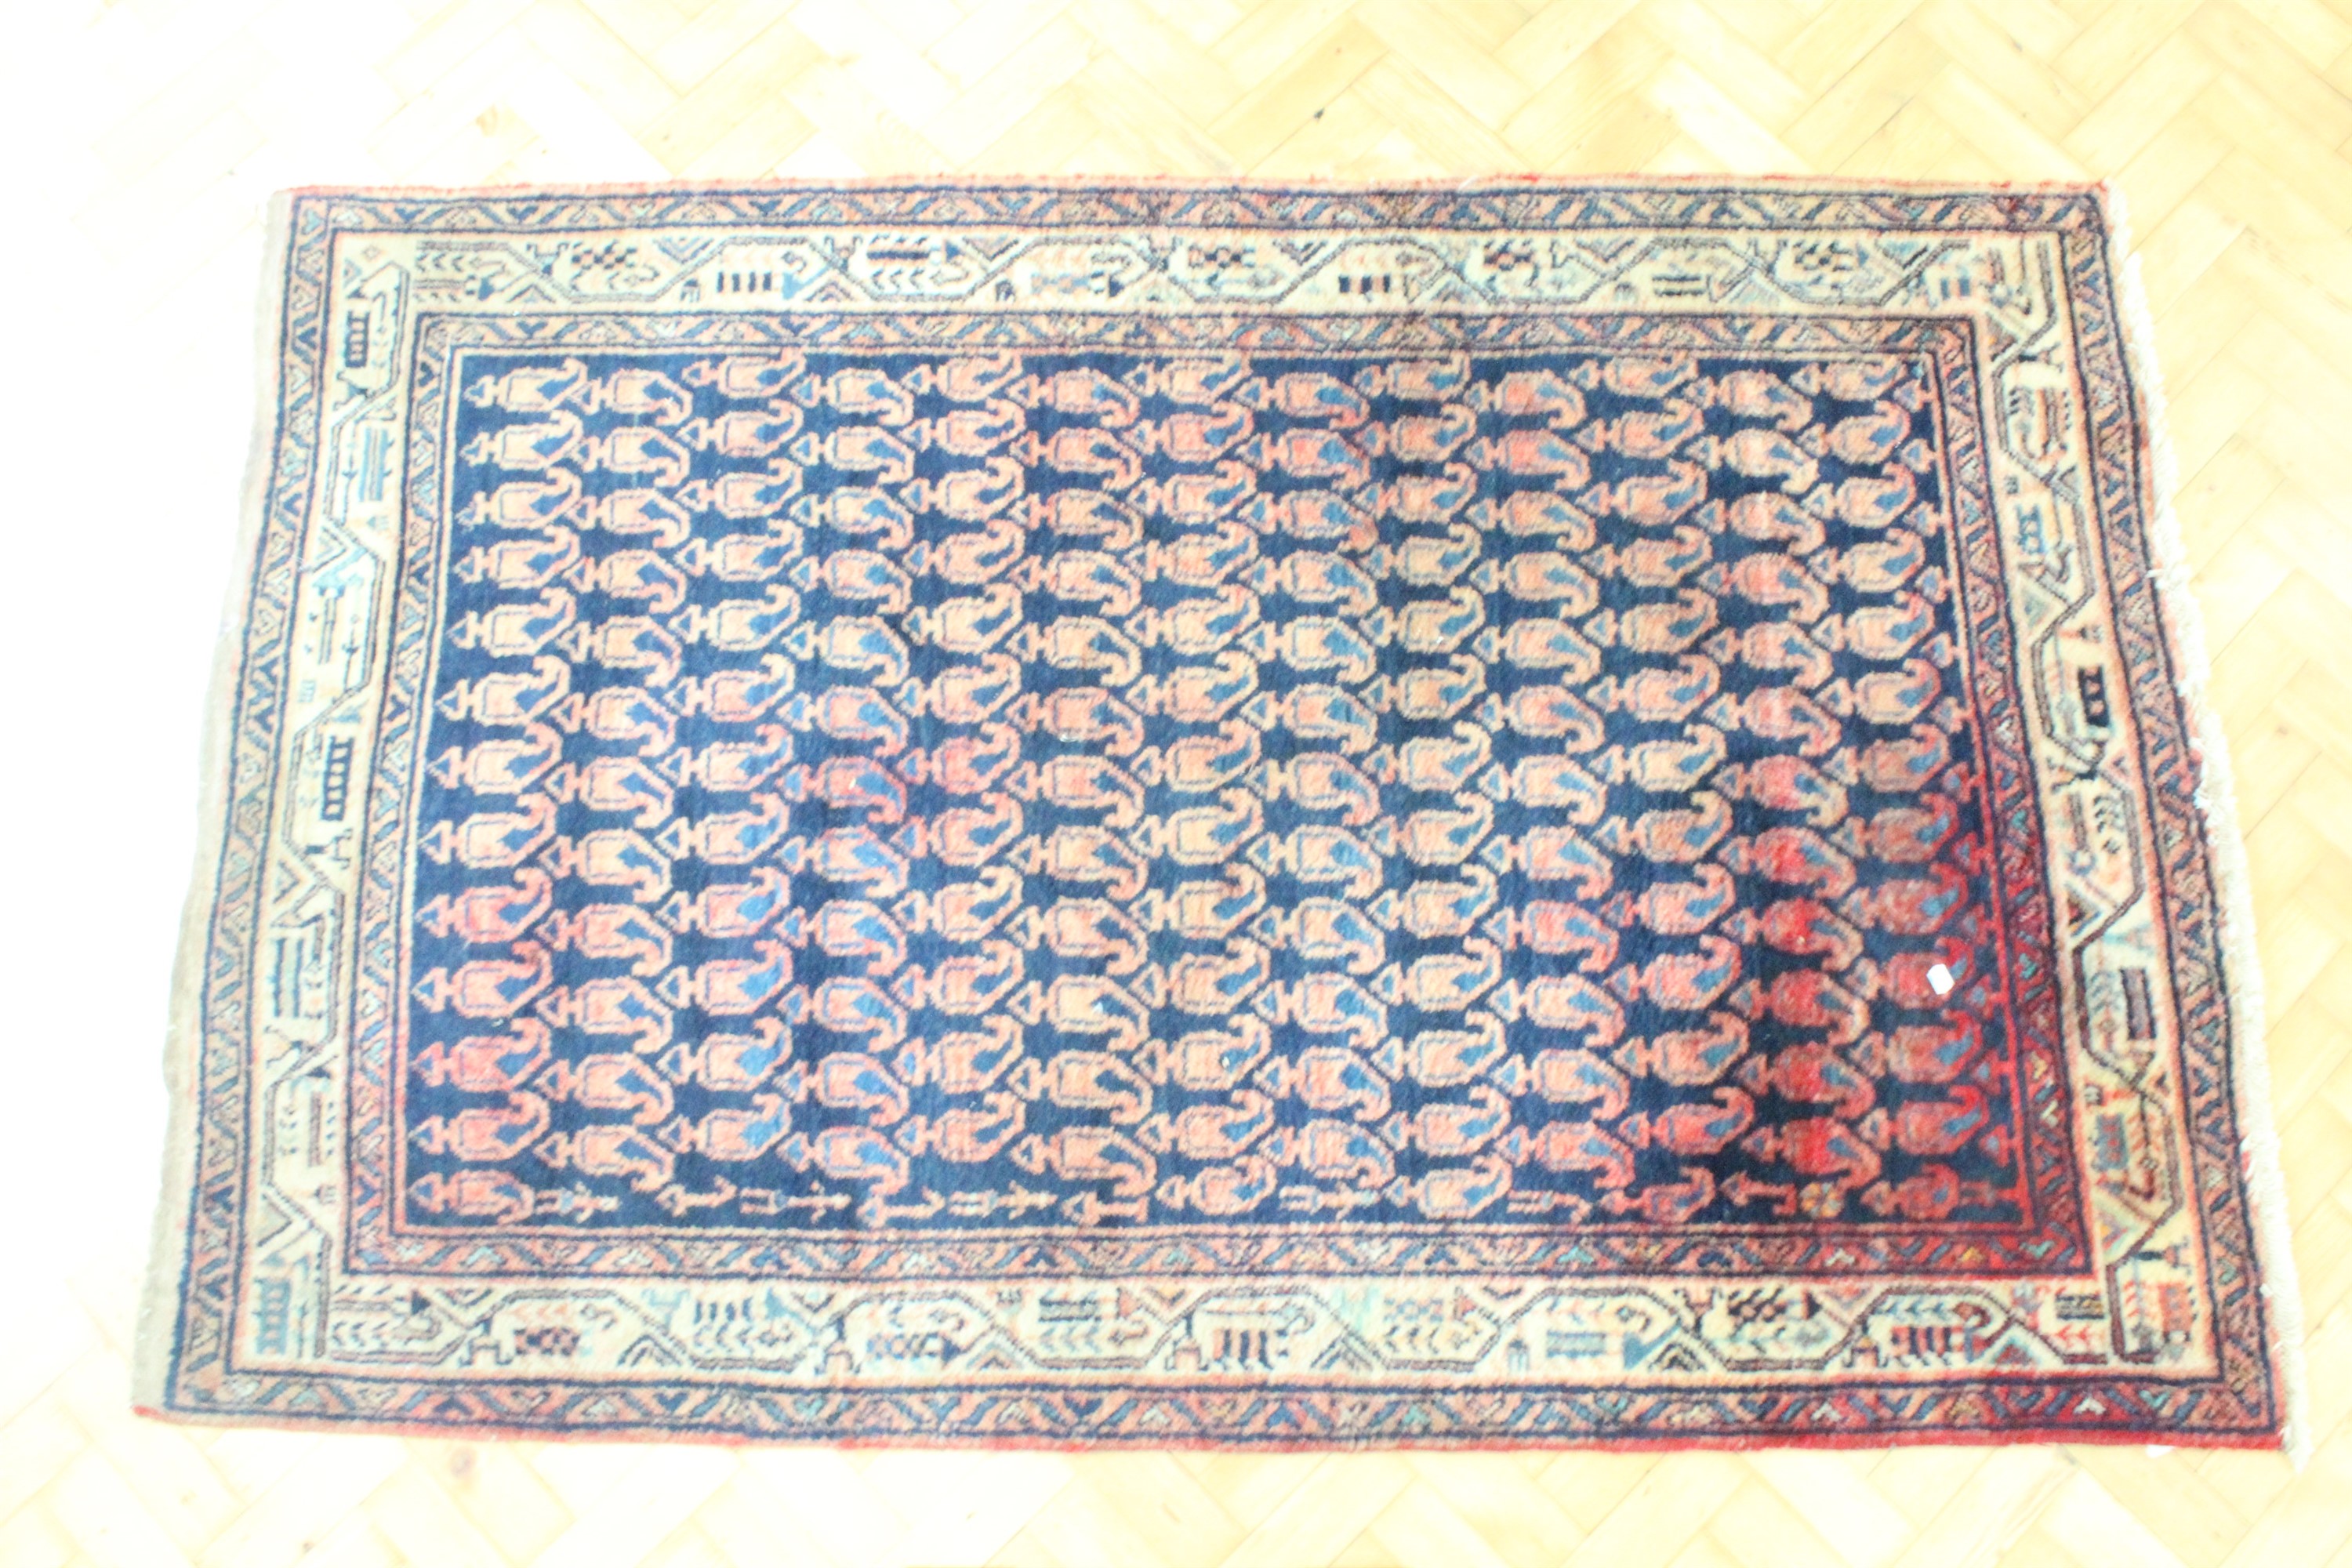 An Iranian Hamadan rug, 210 cm x 133 cm